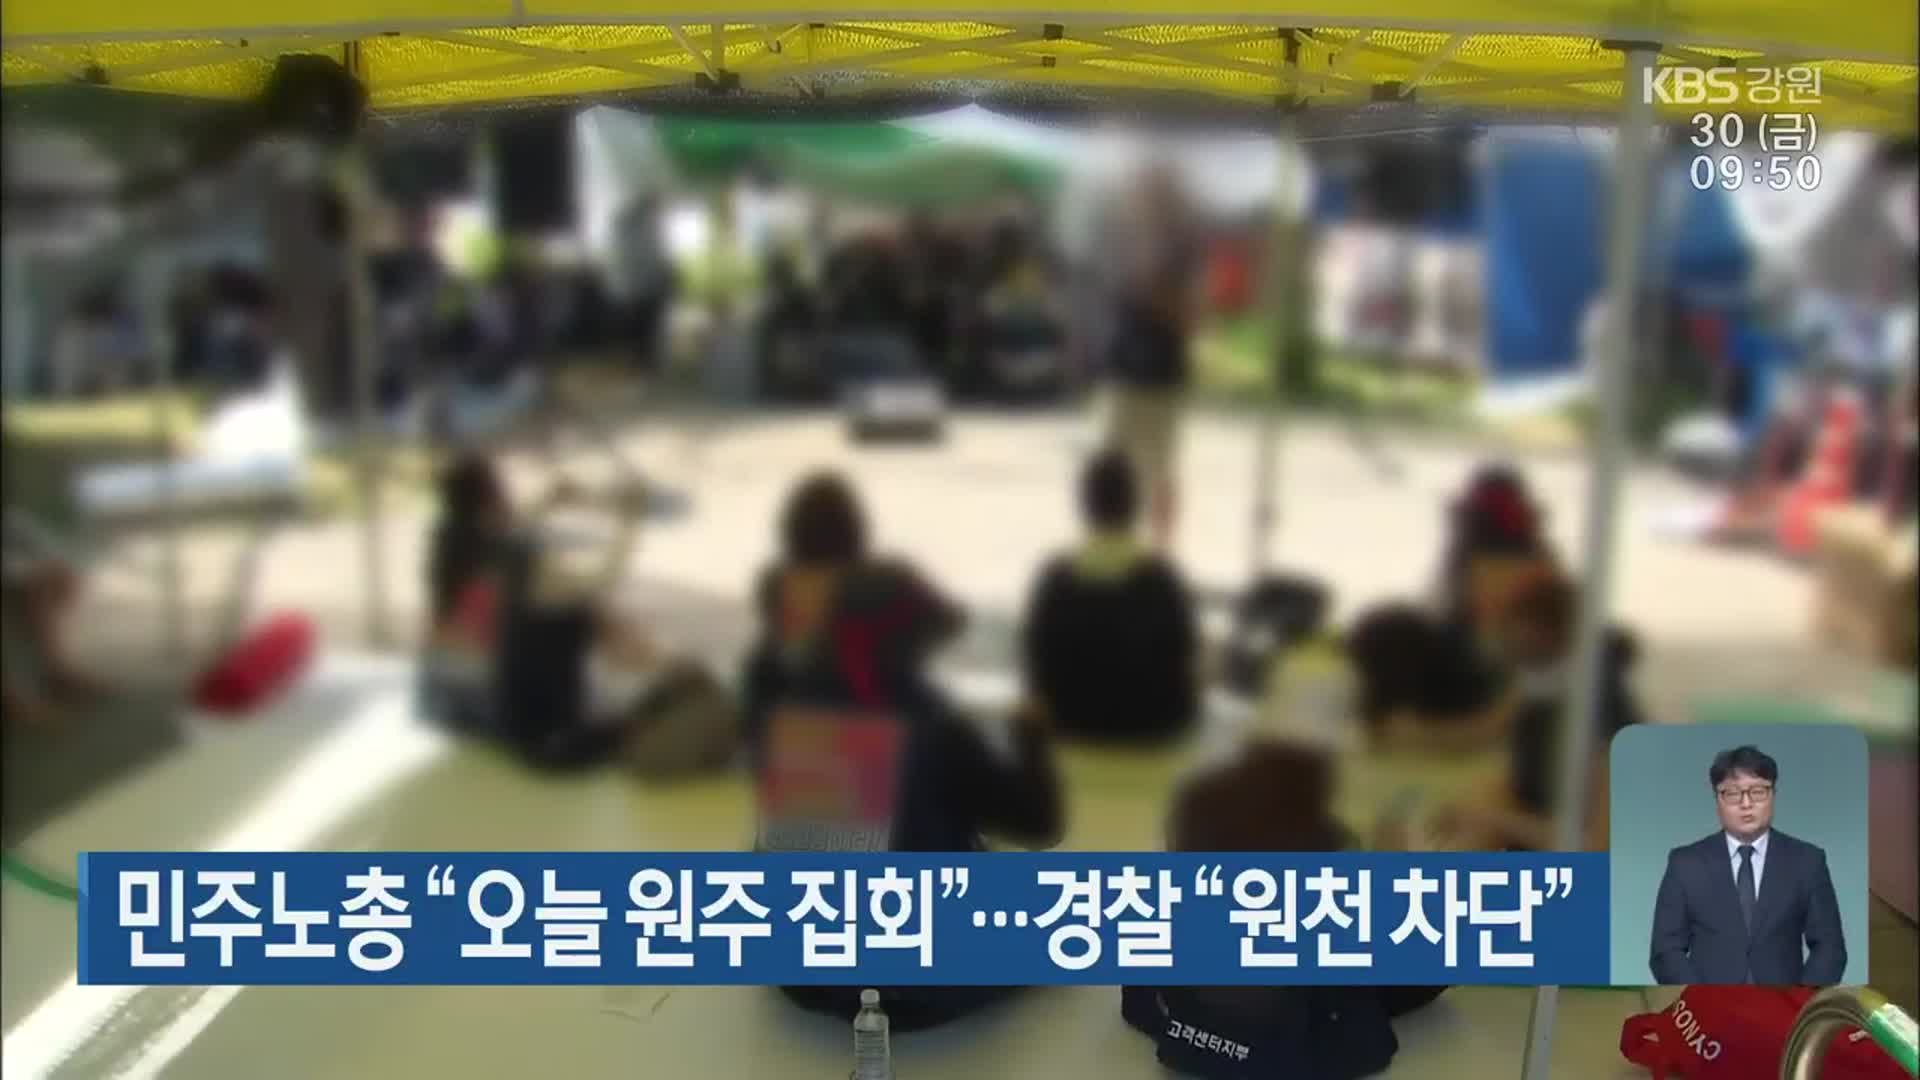 민주노총 “오늘 원주 집회”…경찰 “원천 차단”